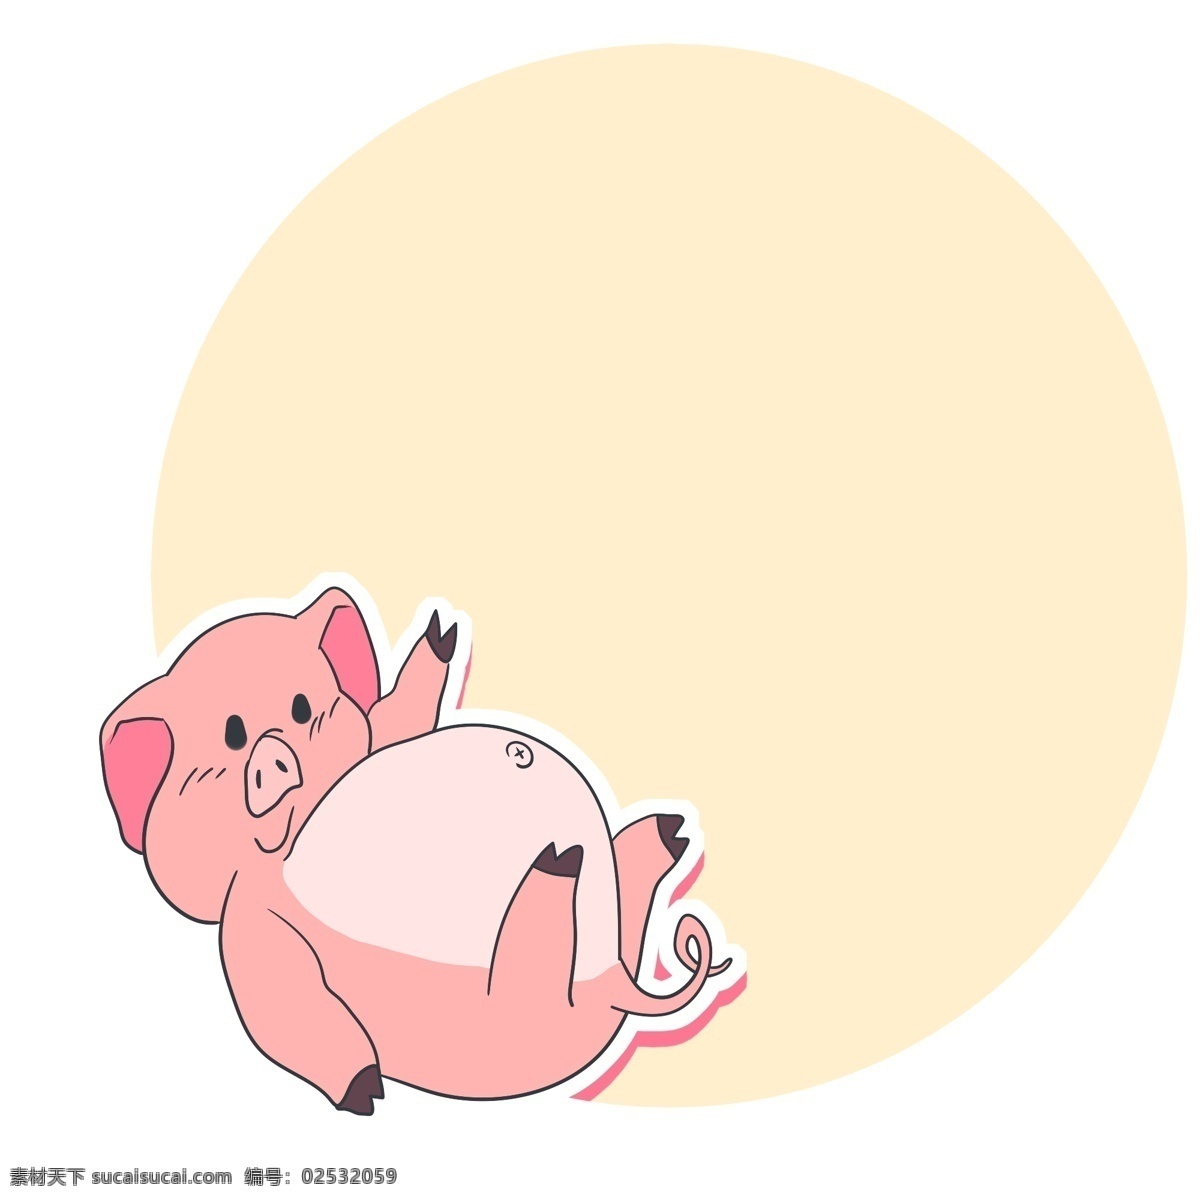 粉色 吉祥物 猪 边框 可爱猪猪边框 插画 黄色圆形边框 可爱吉祥物猪 动物边框 插图